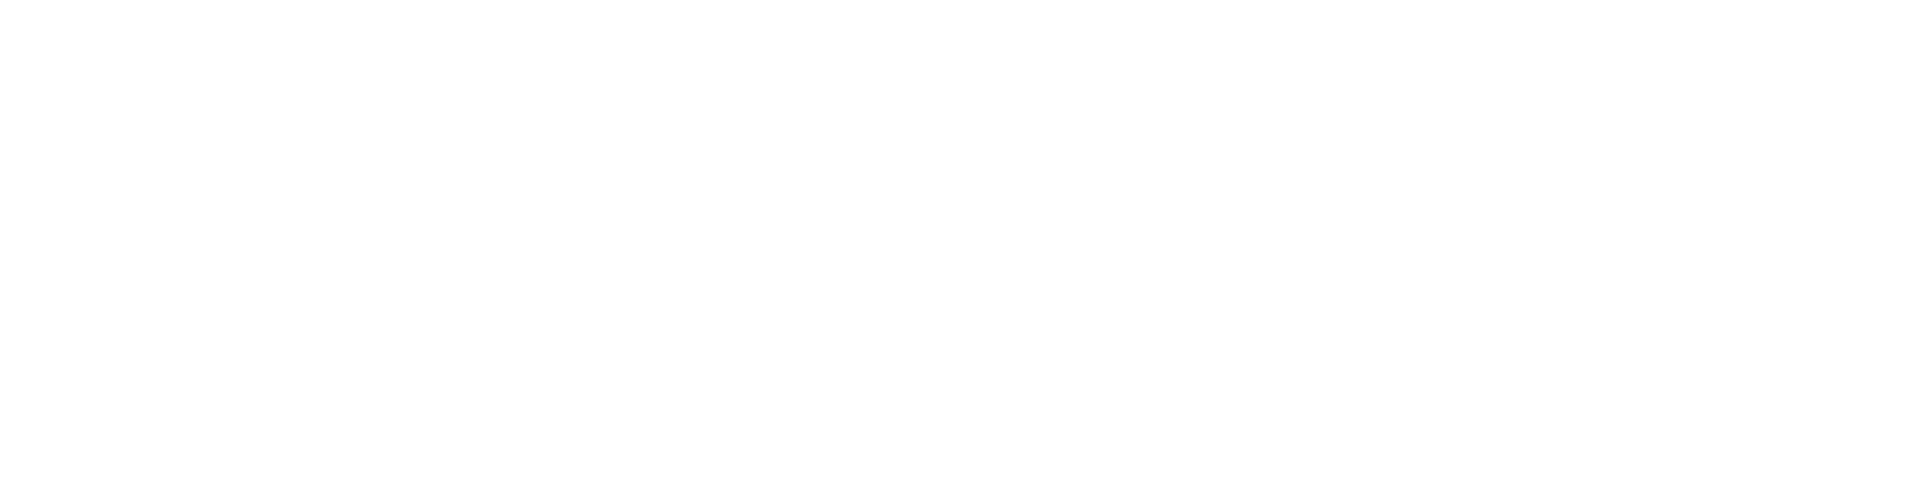 Håndtegnet illustration af en person det ligger ned